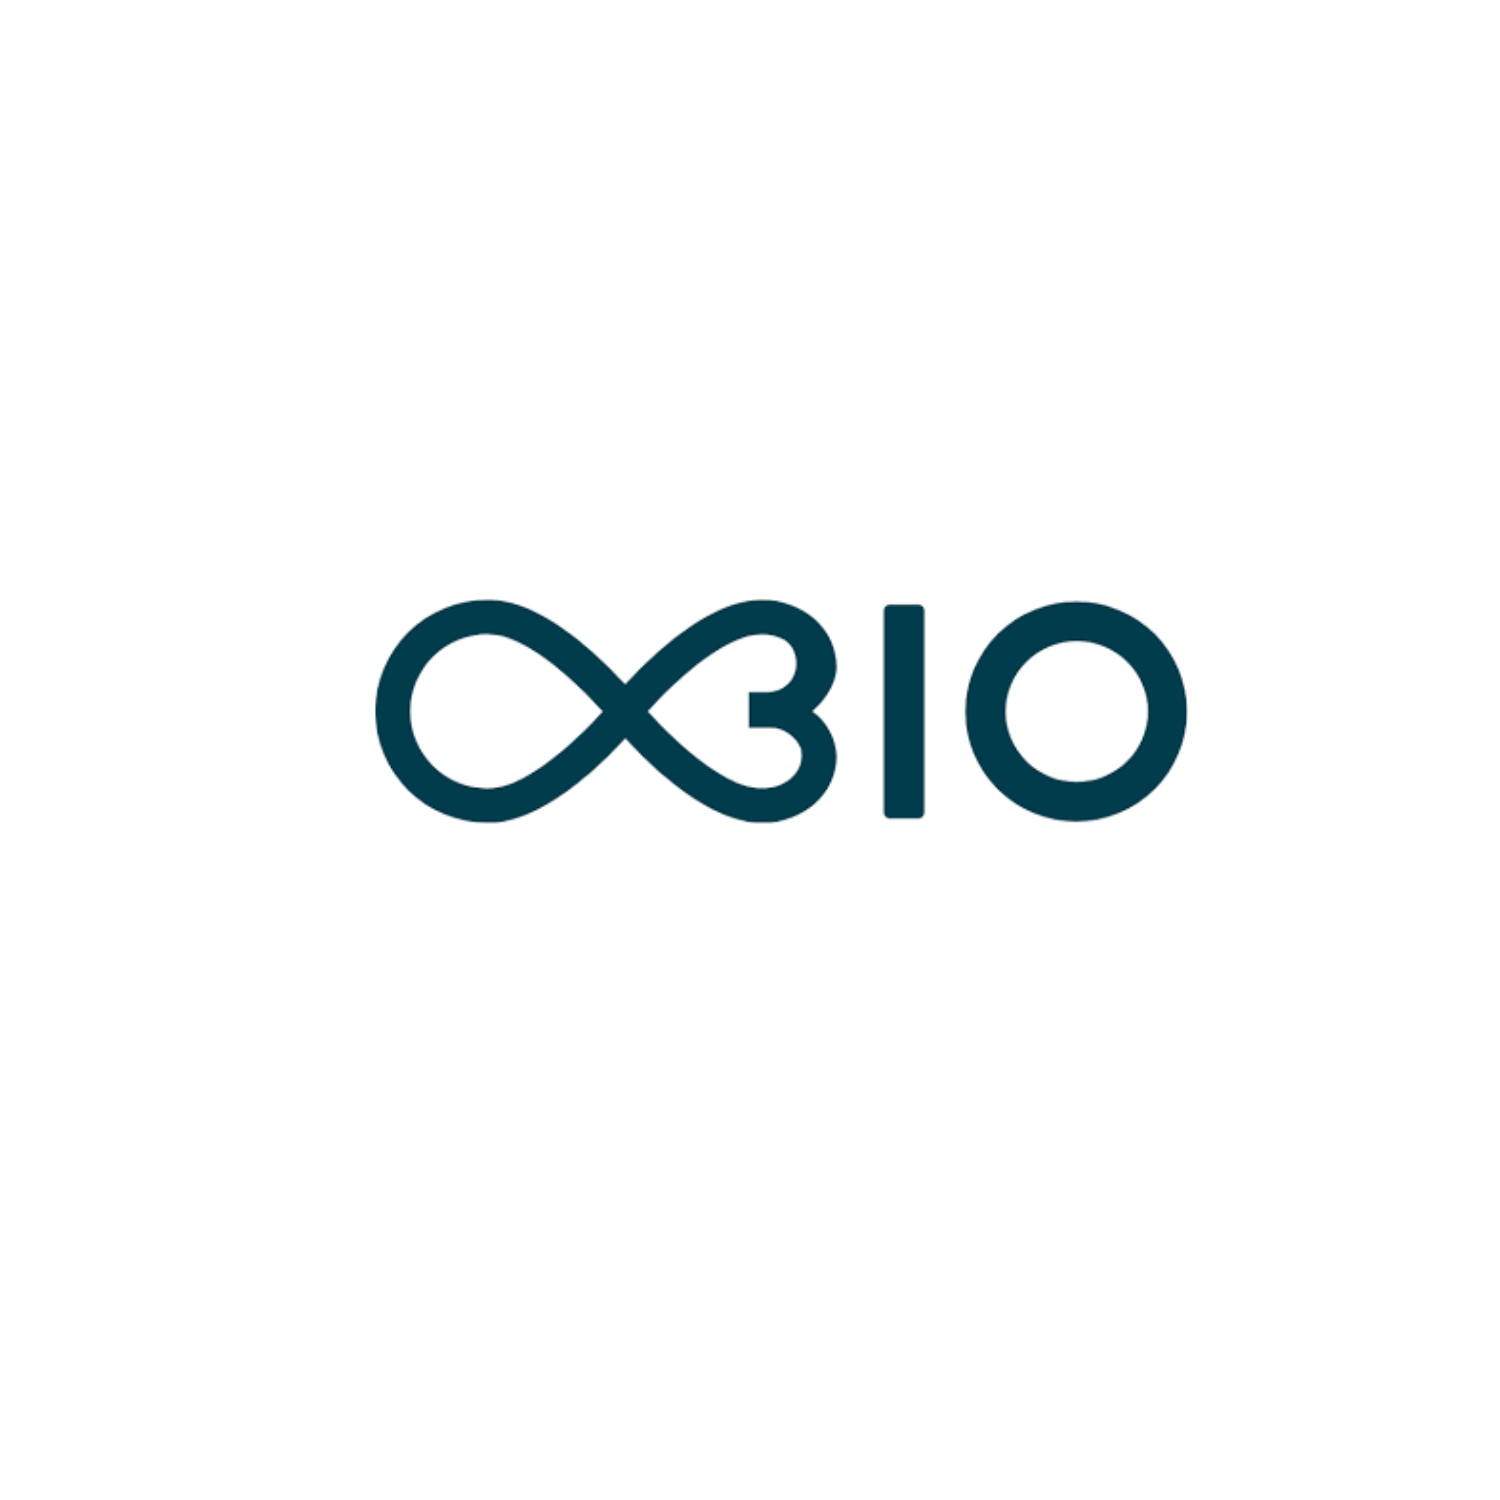 OBIO logo.png